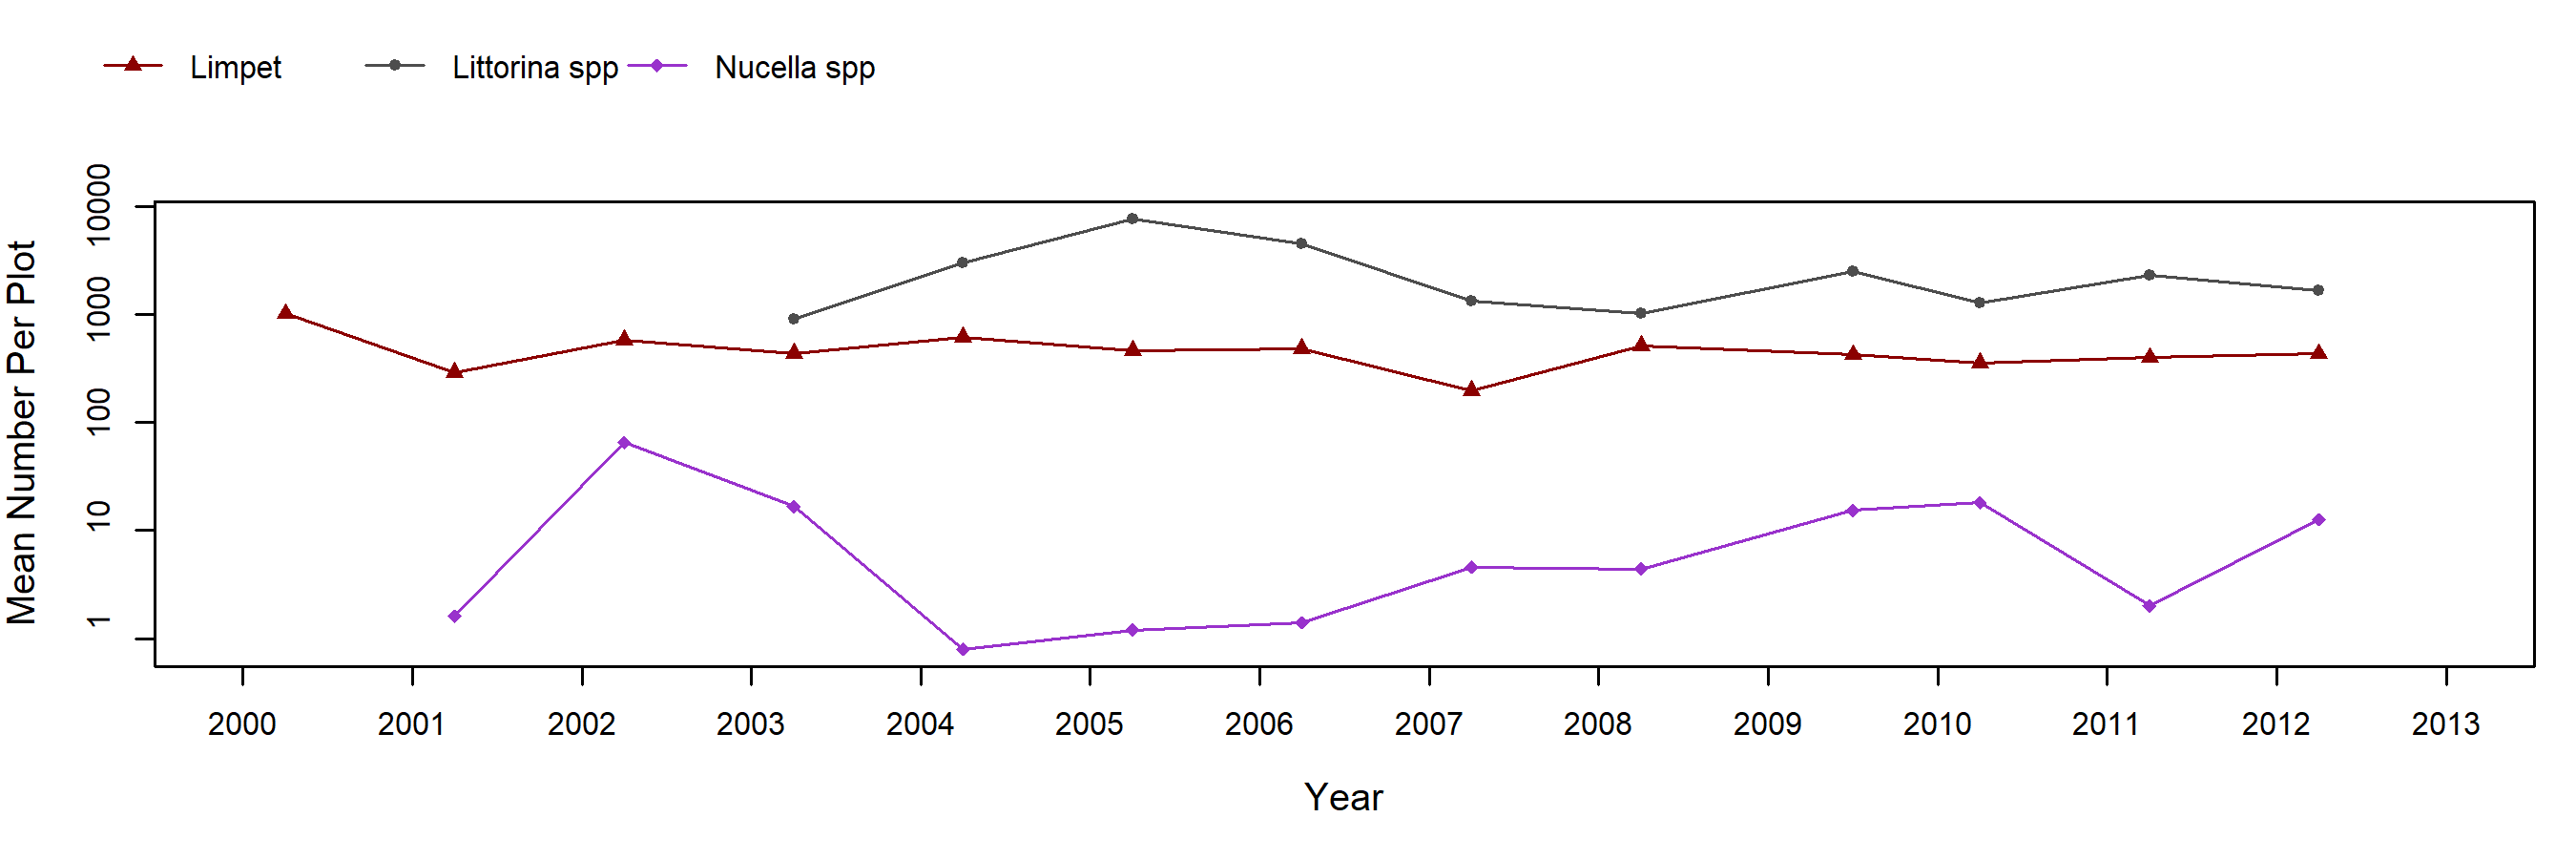 Cape Arago Fucus trend plot